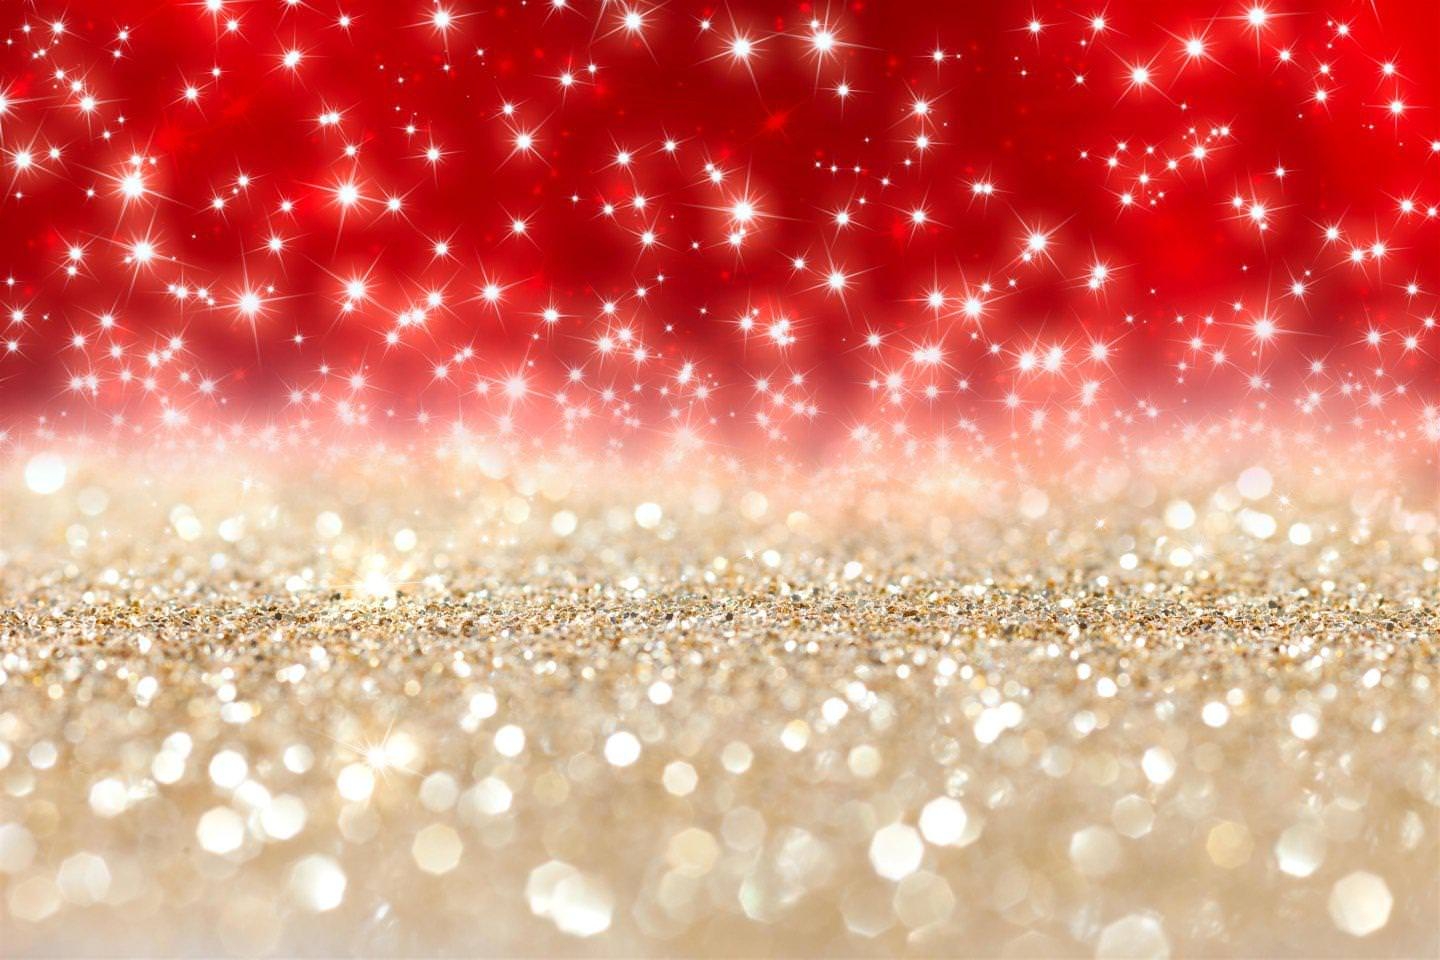 silver glitter wallpaper,glitter,red,embellishment,fashion accessory